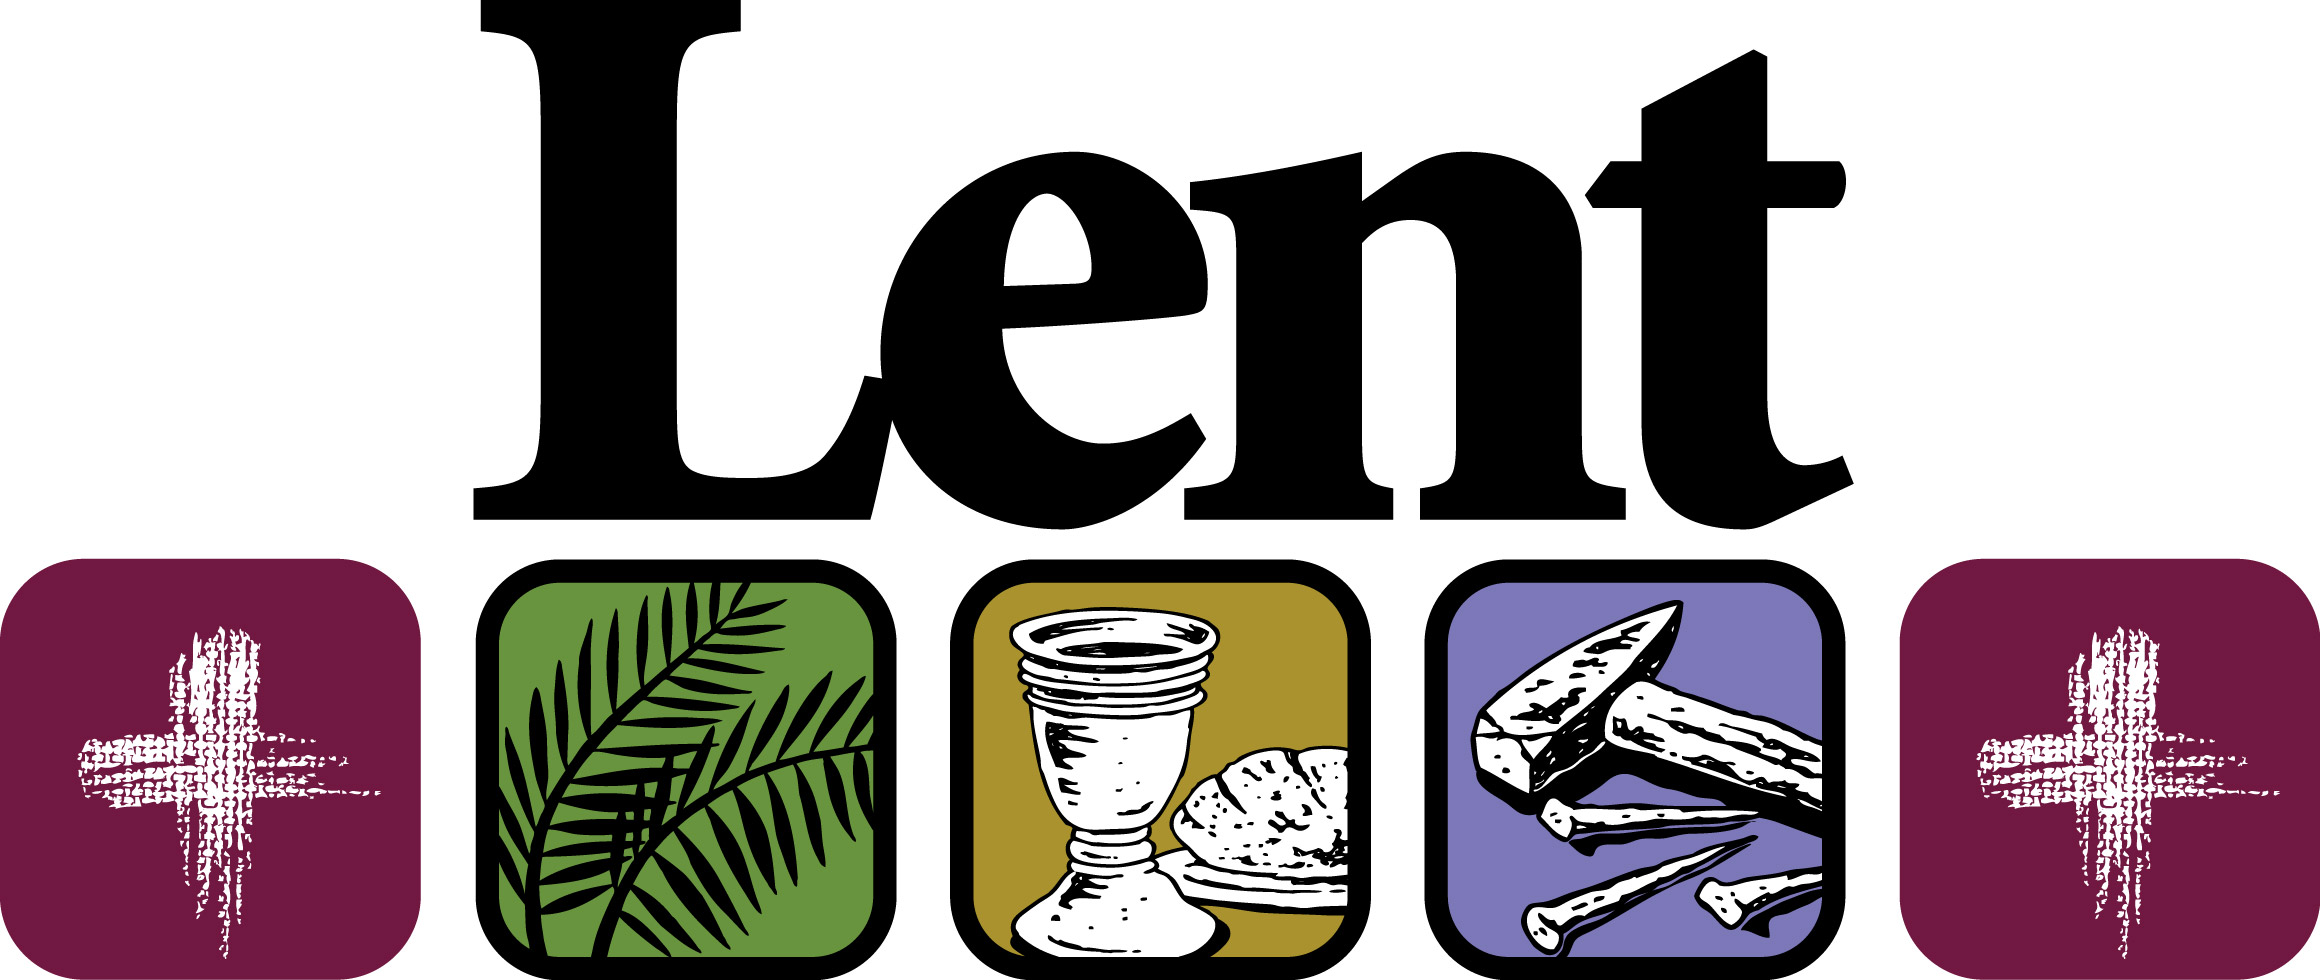 Catholic lent